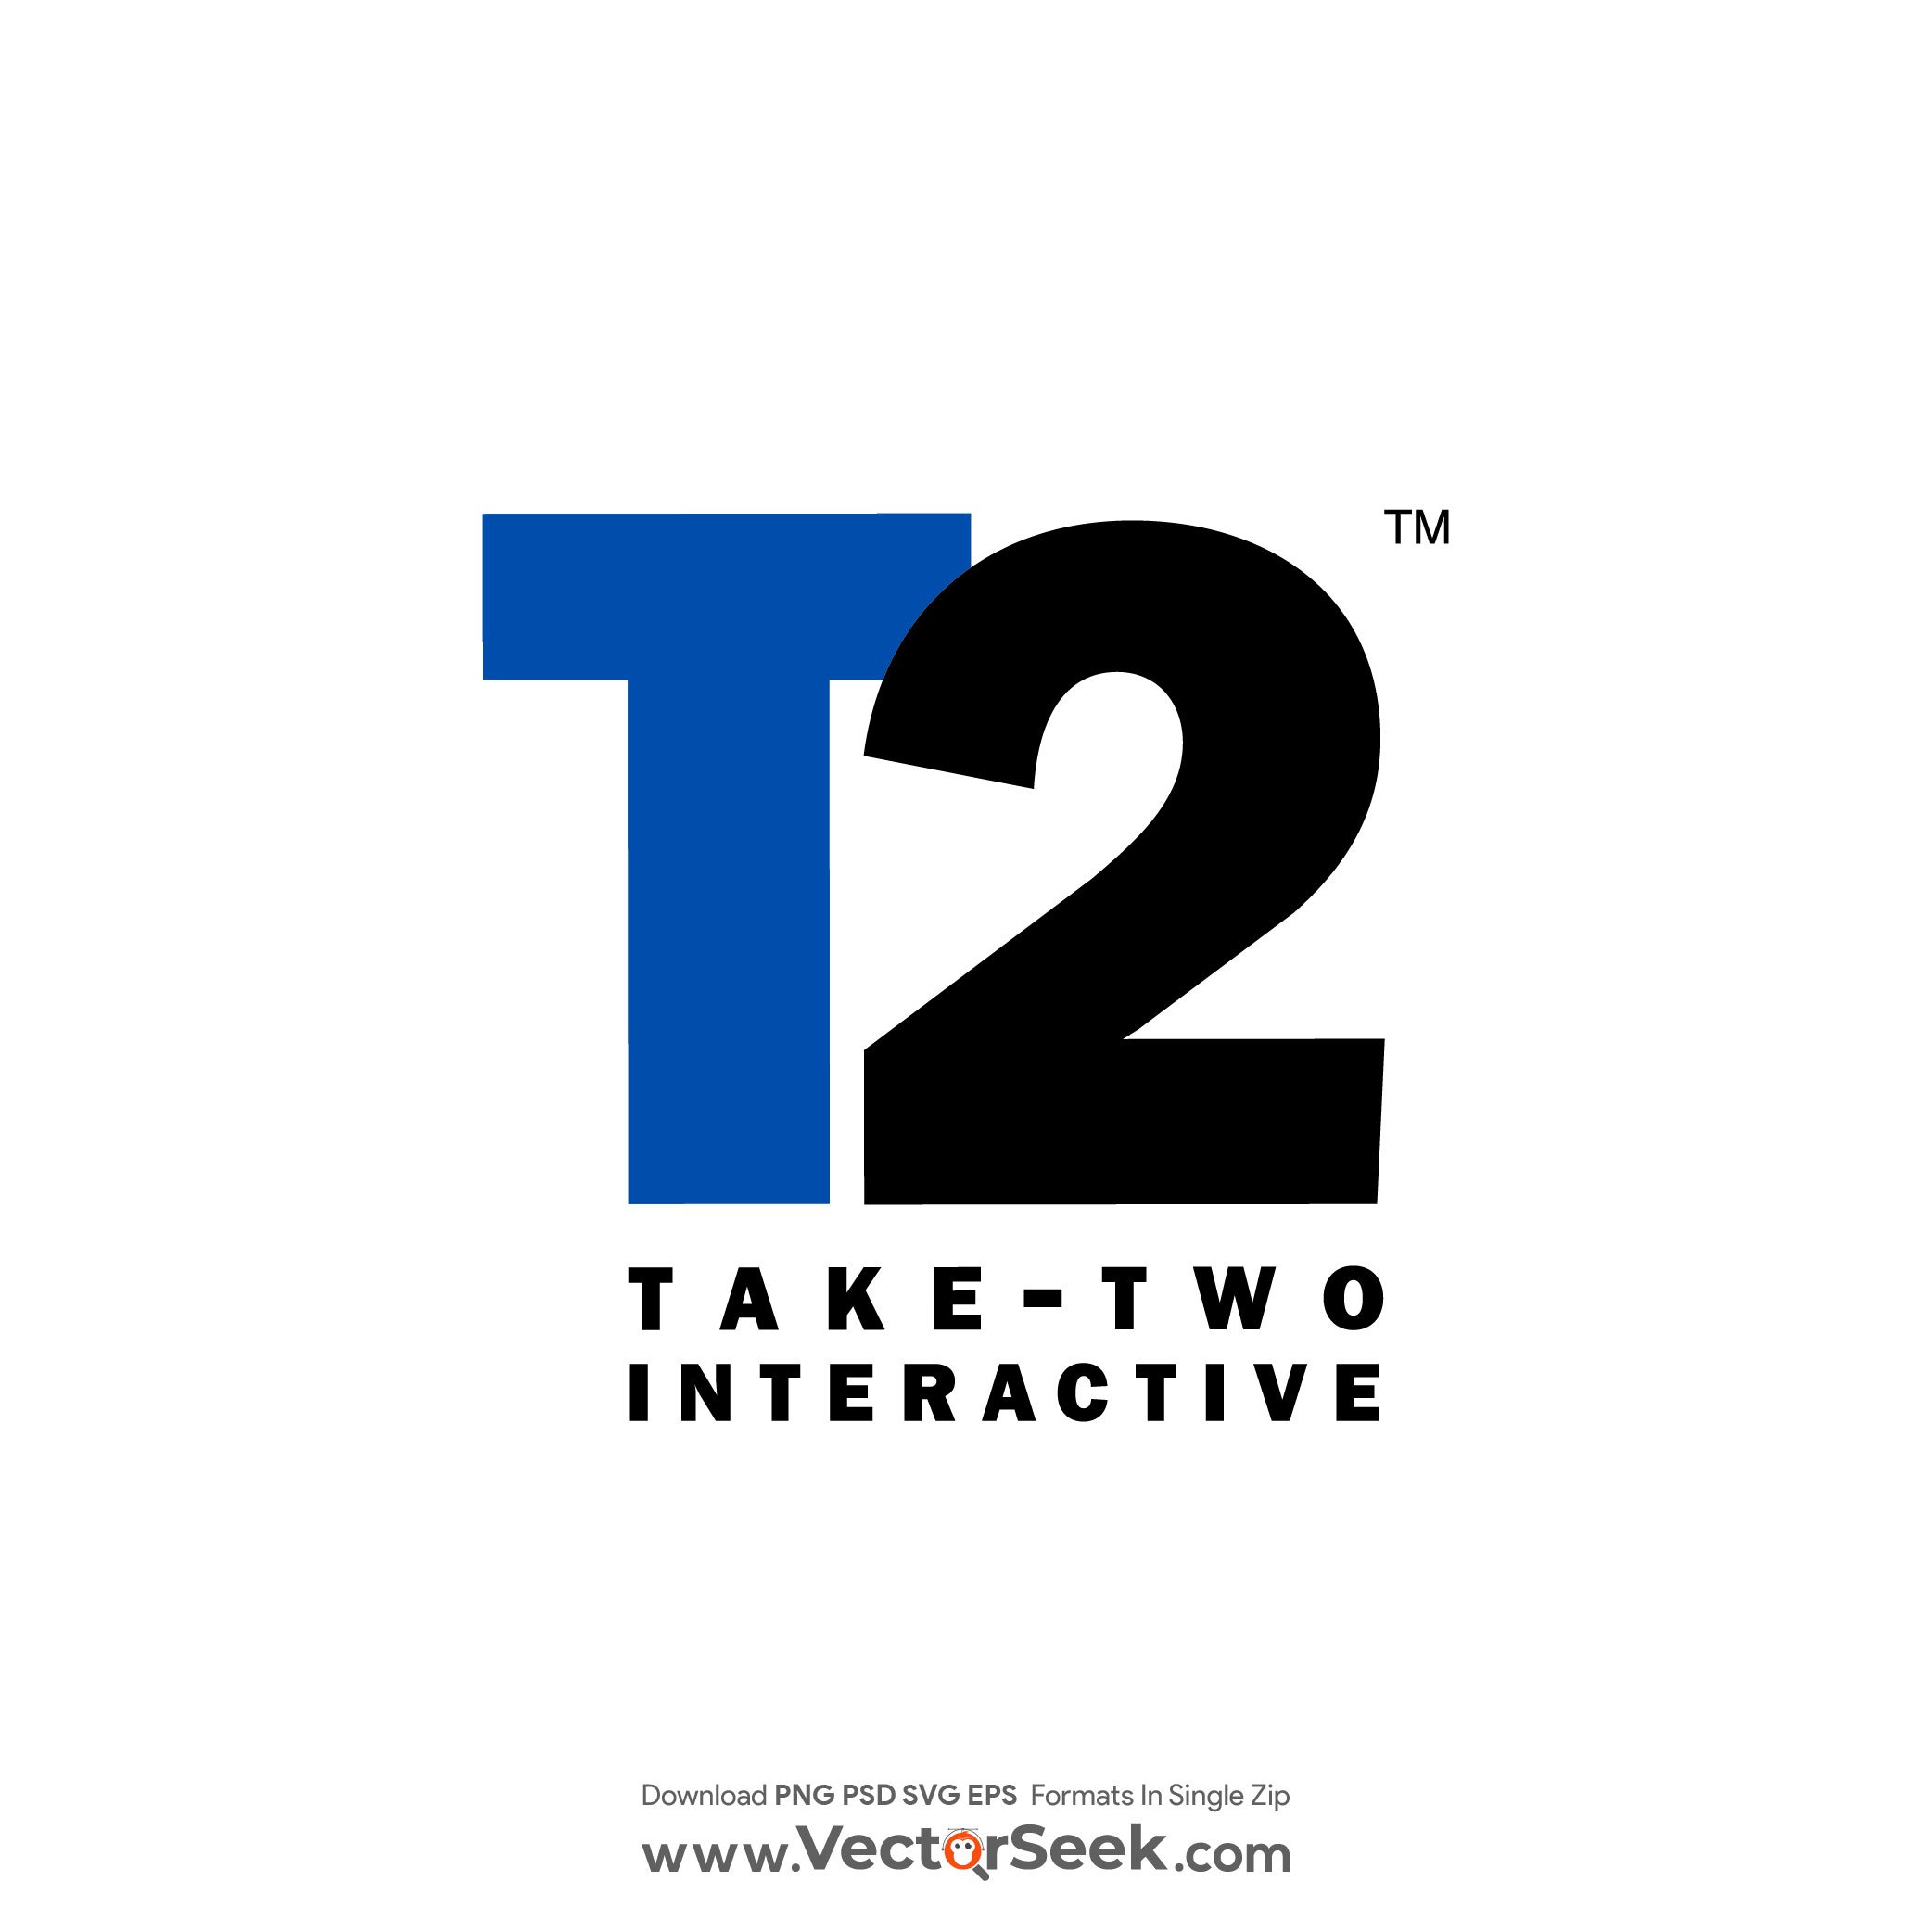 Take-Two Interactive Logo Vector